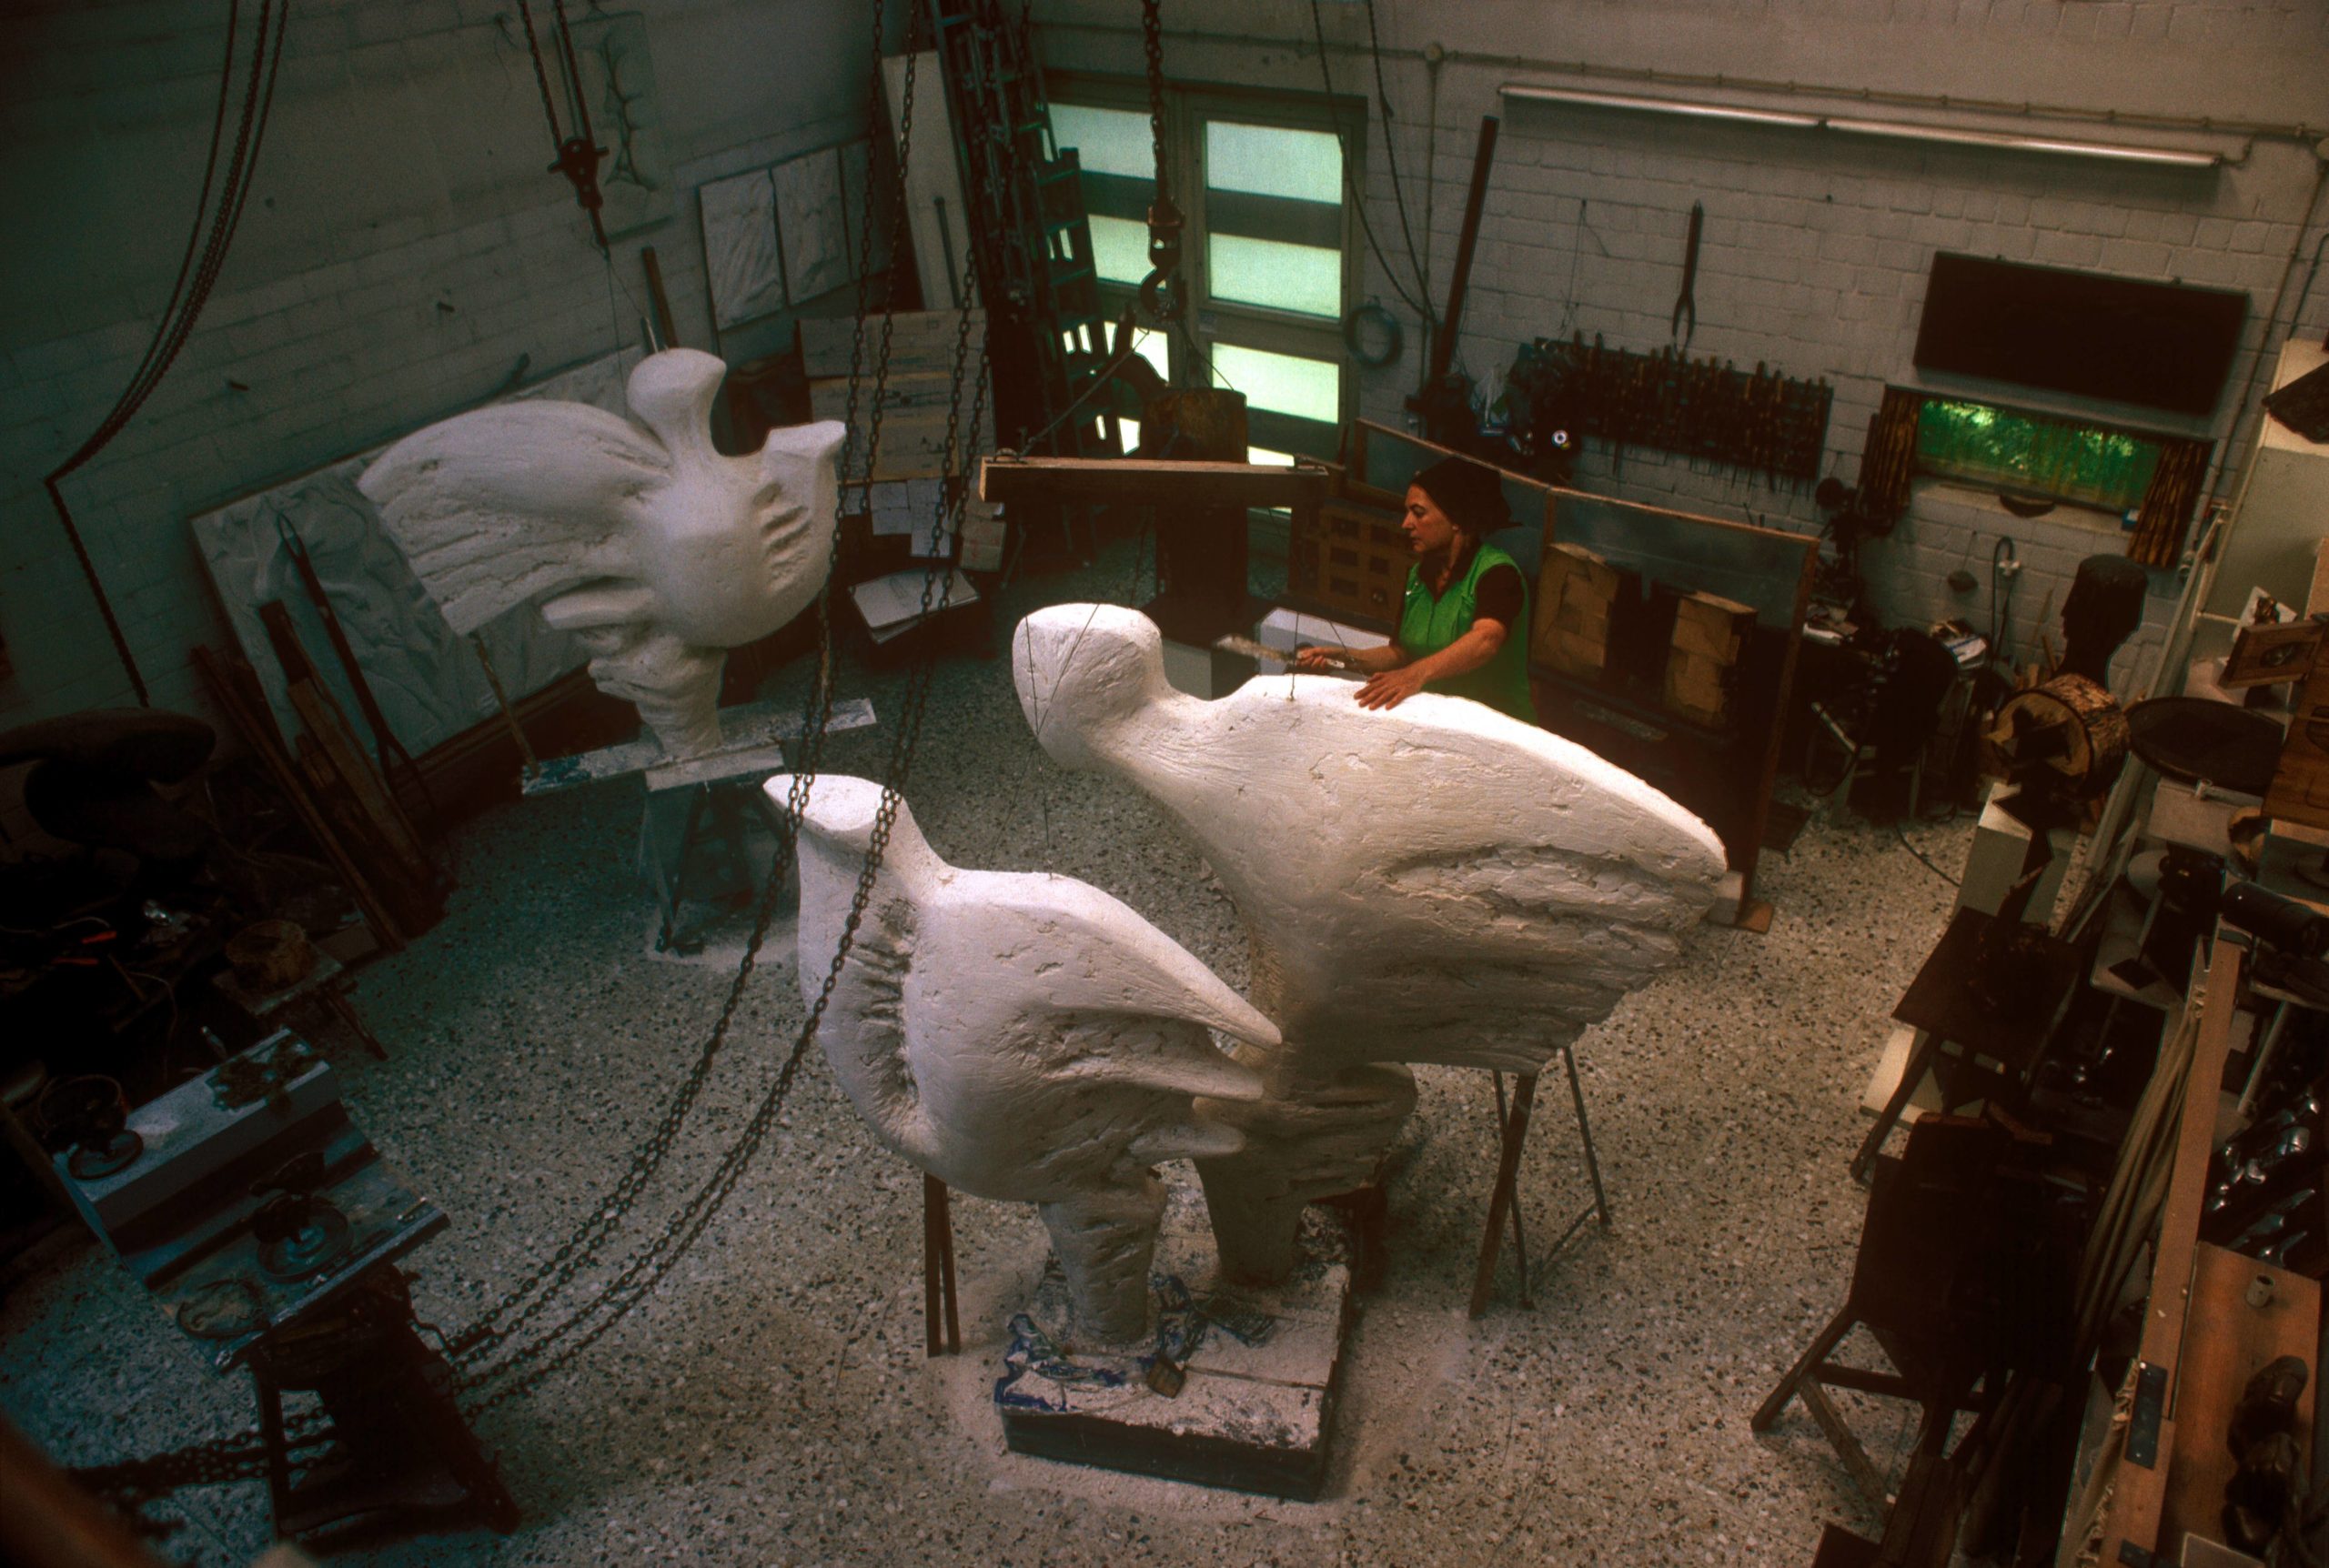 Ursula Hanke Förster arbeitet an der Brunnenfigur "Die Vögel" in ihrem Atelier in Berlin, 1986. Foto: Imago/Günter Schneider